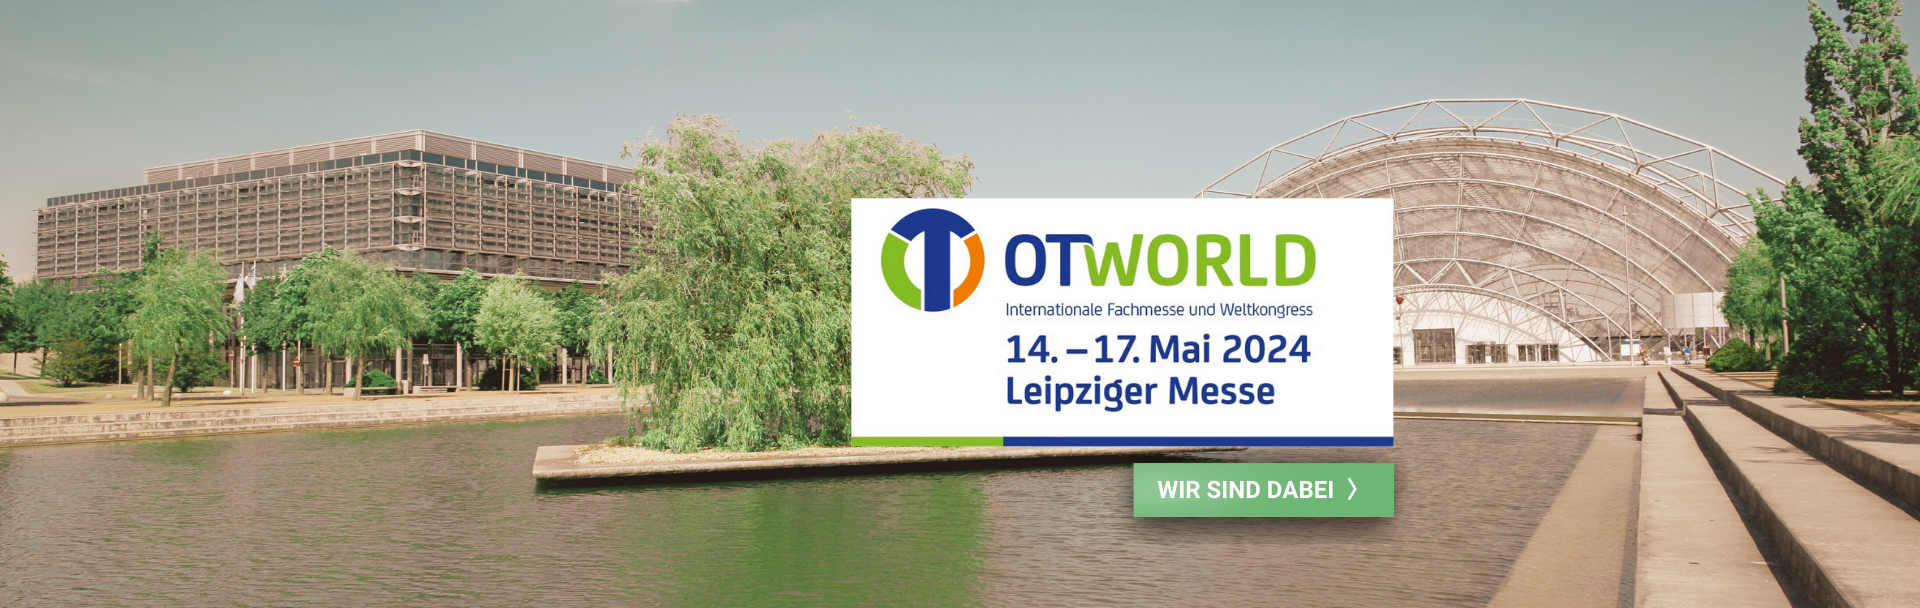 Inorsys auf der OT-World 14.- 17. Mai Leipziger Messe